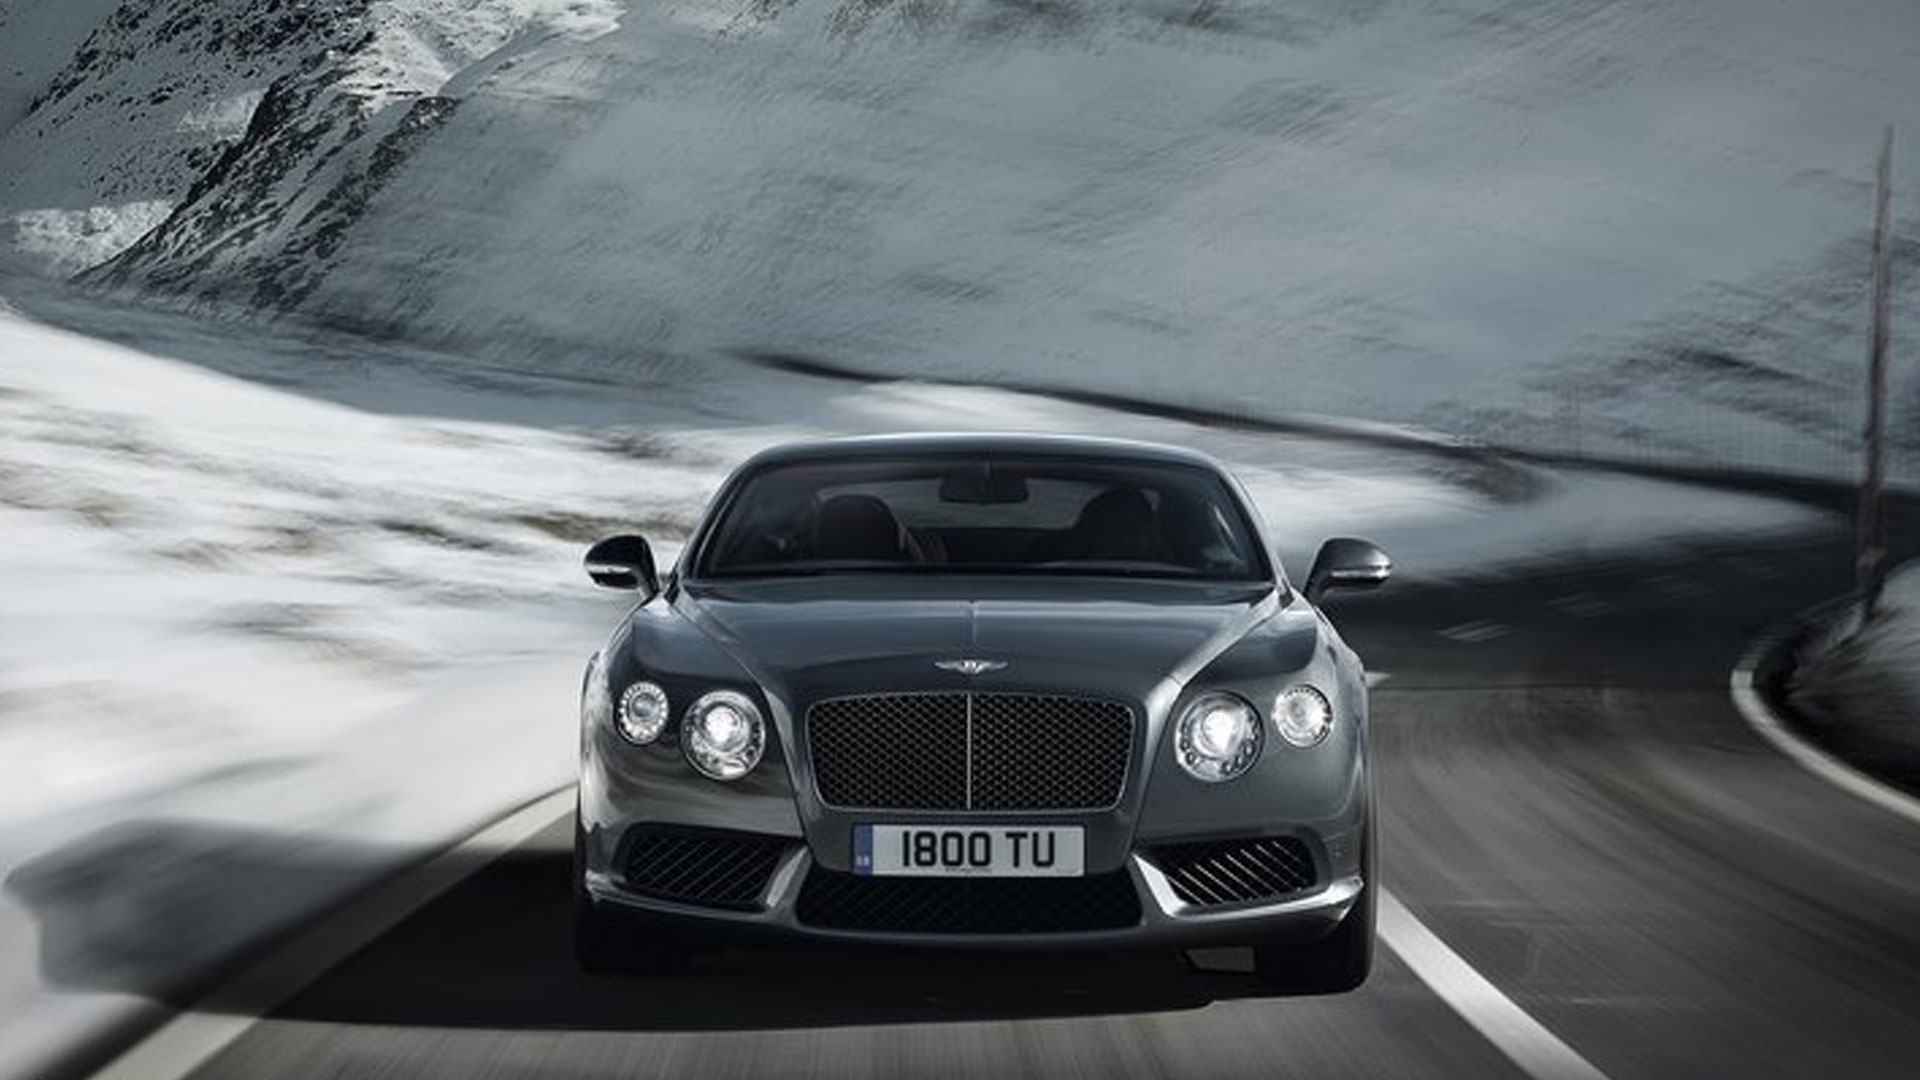 Descargar fondos de escritorio de Bentley Continental Gt Velocidad HD